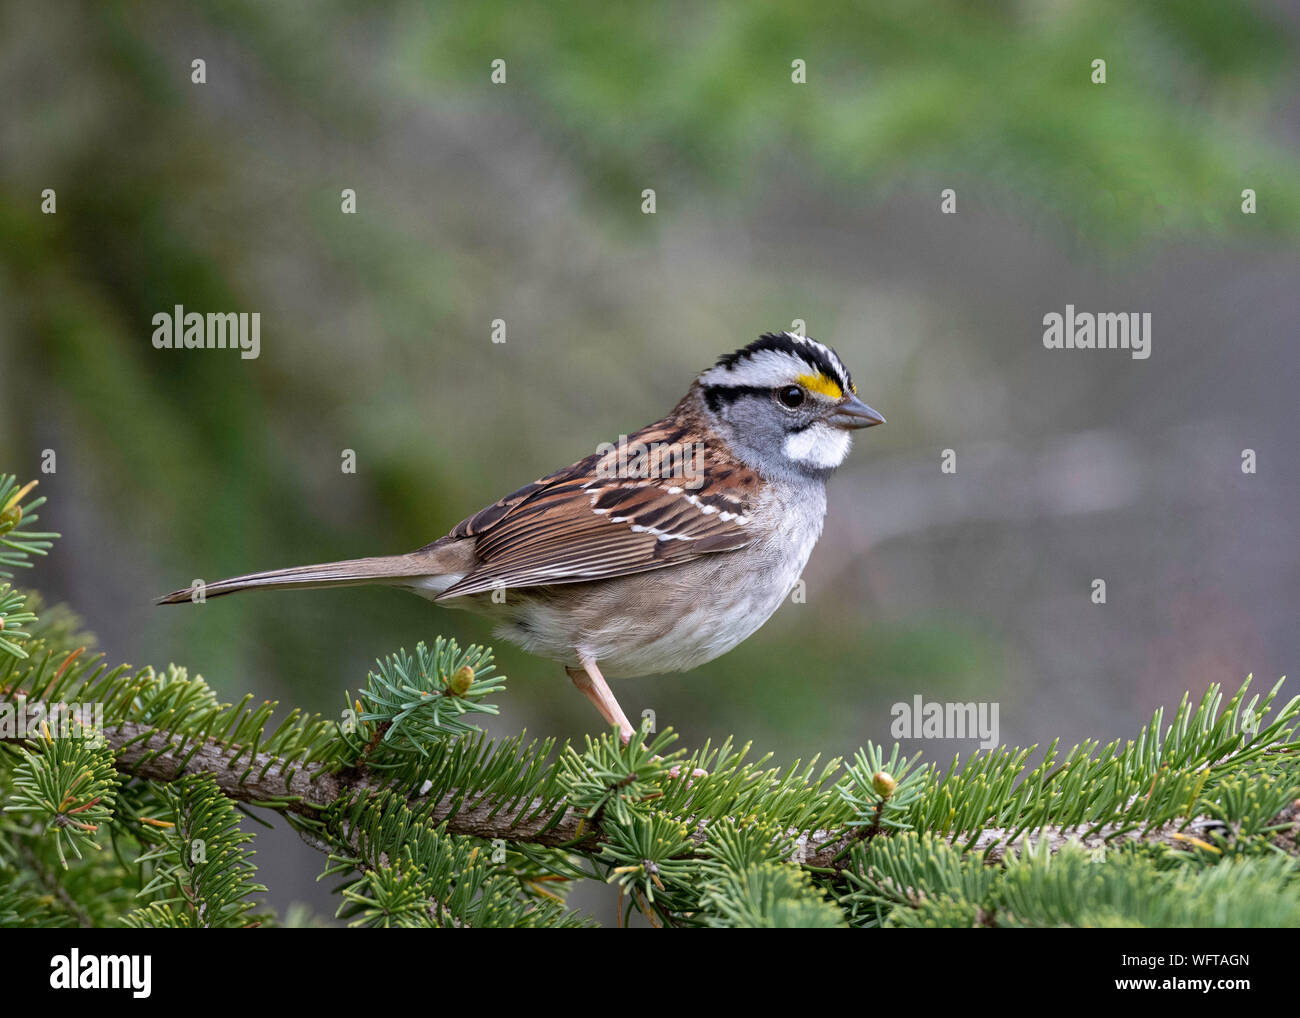 White-throated Sparrow (Zonotrichia albicollis) Stock Photo